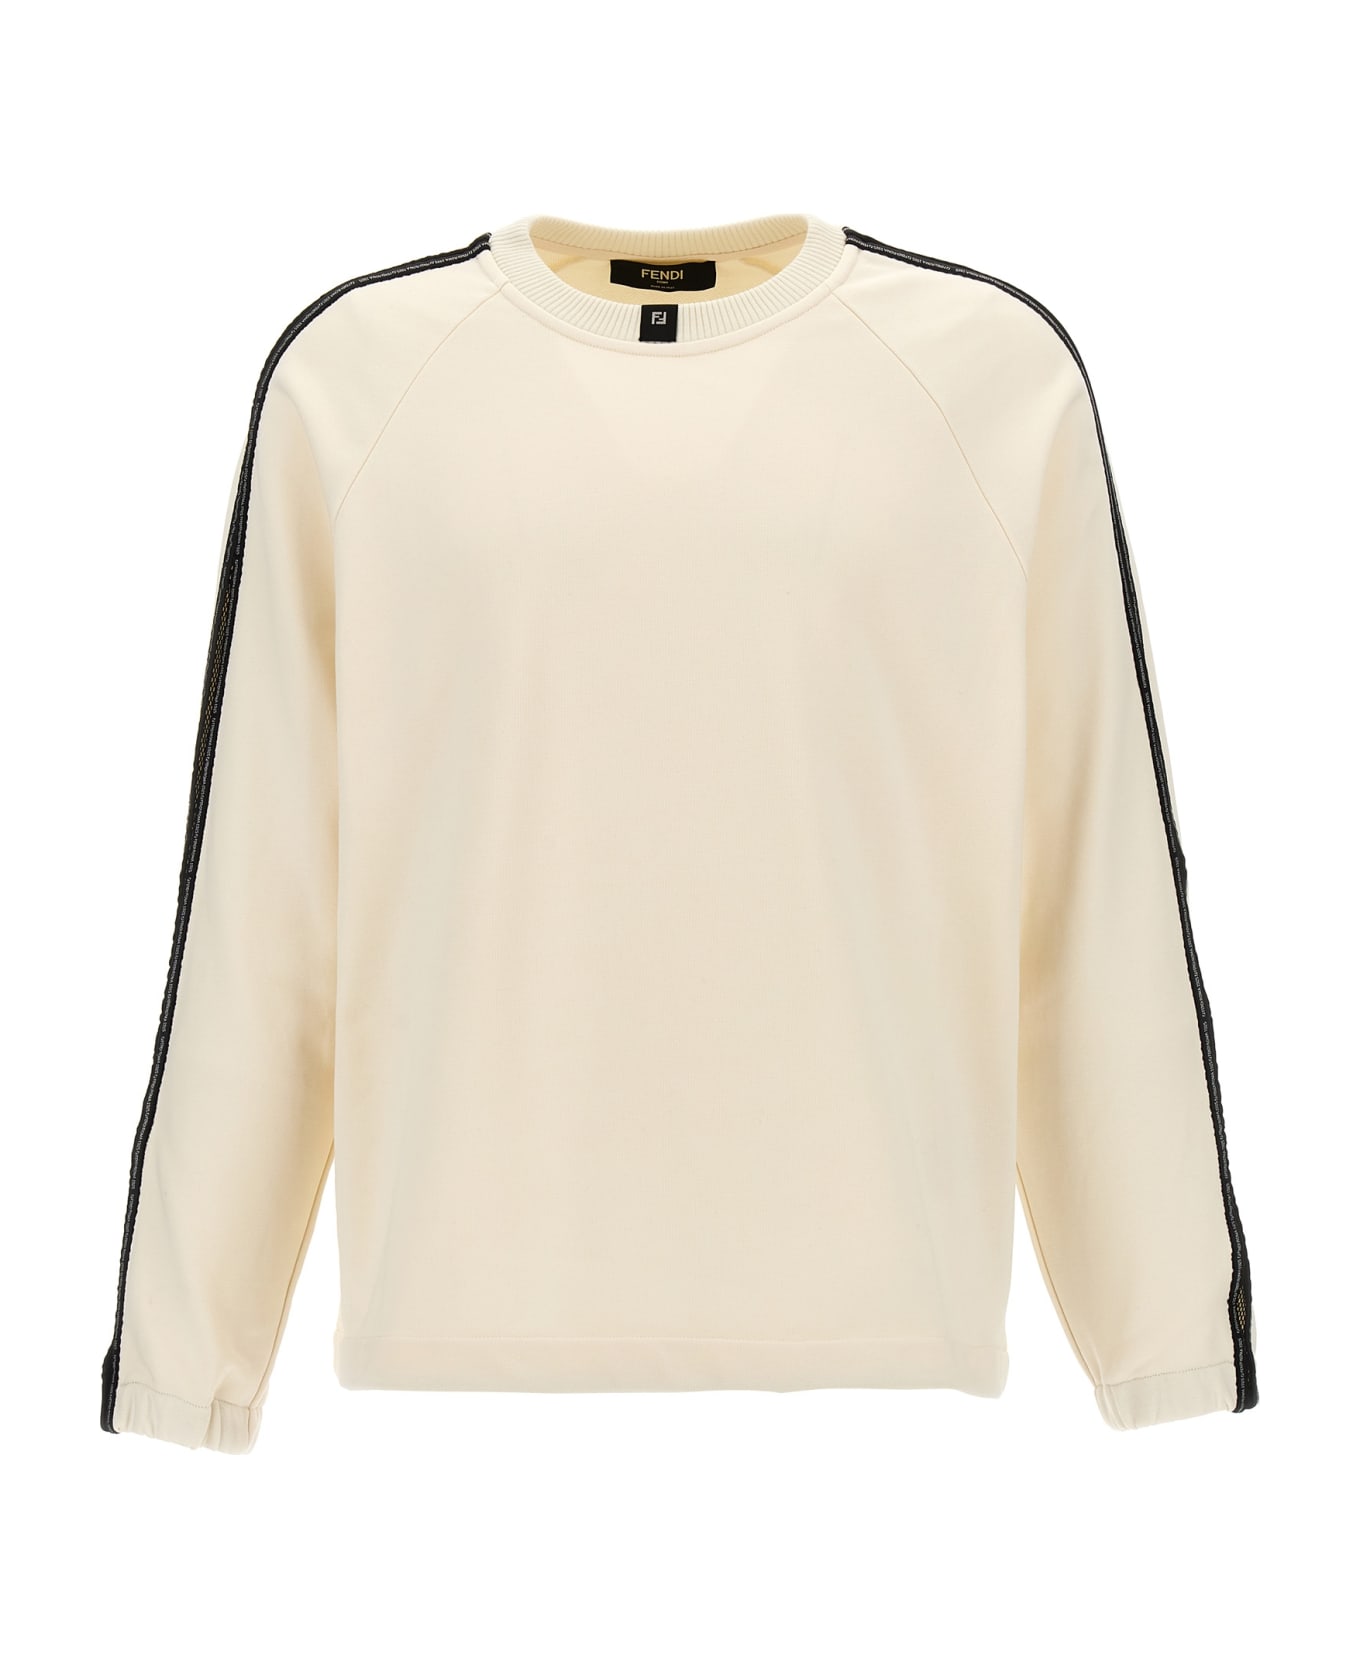 Fendi Mesh Insert Sweatshirt - White/Black